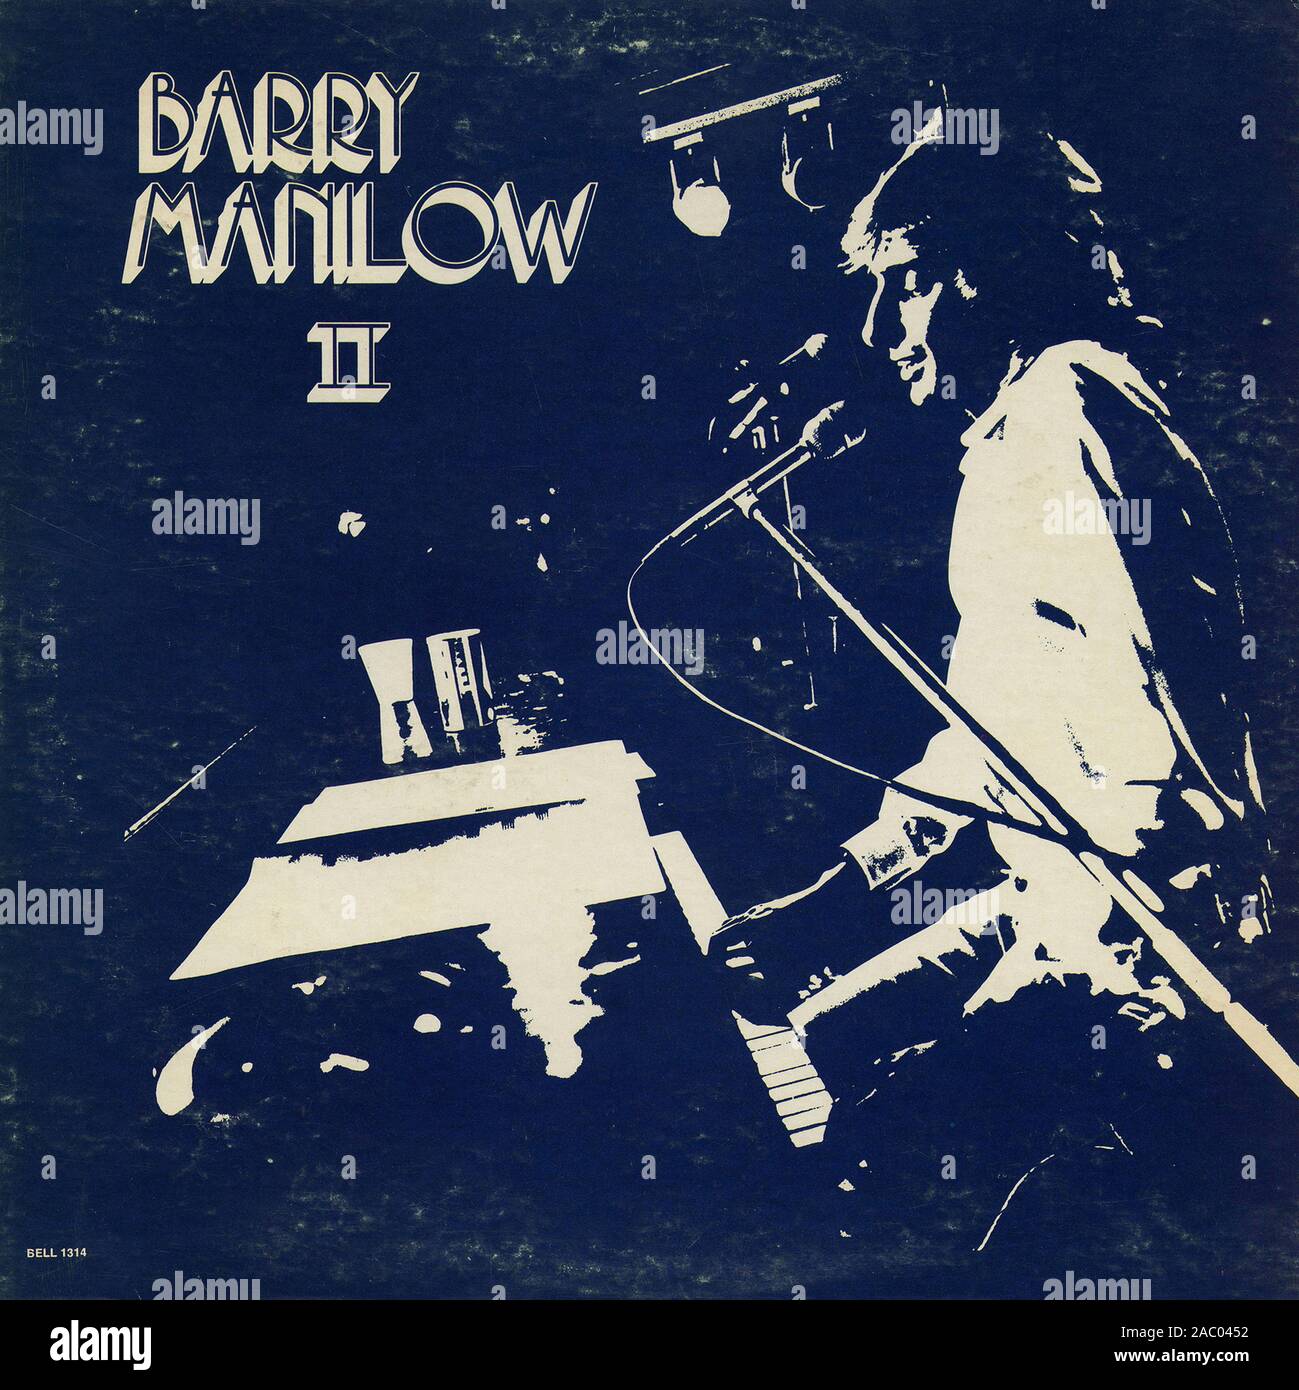 Barry Manilow II - couverture de l'album vinyle vintage Banque D'Images